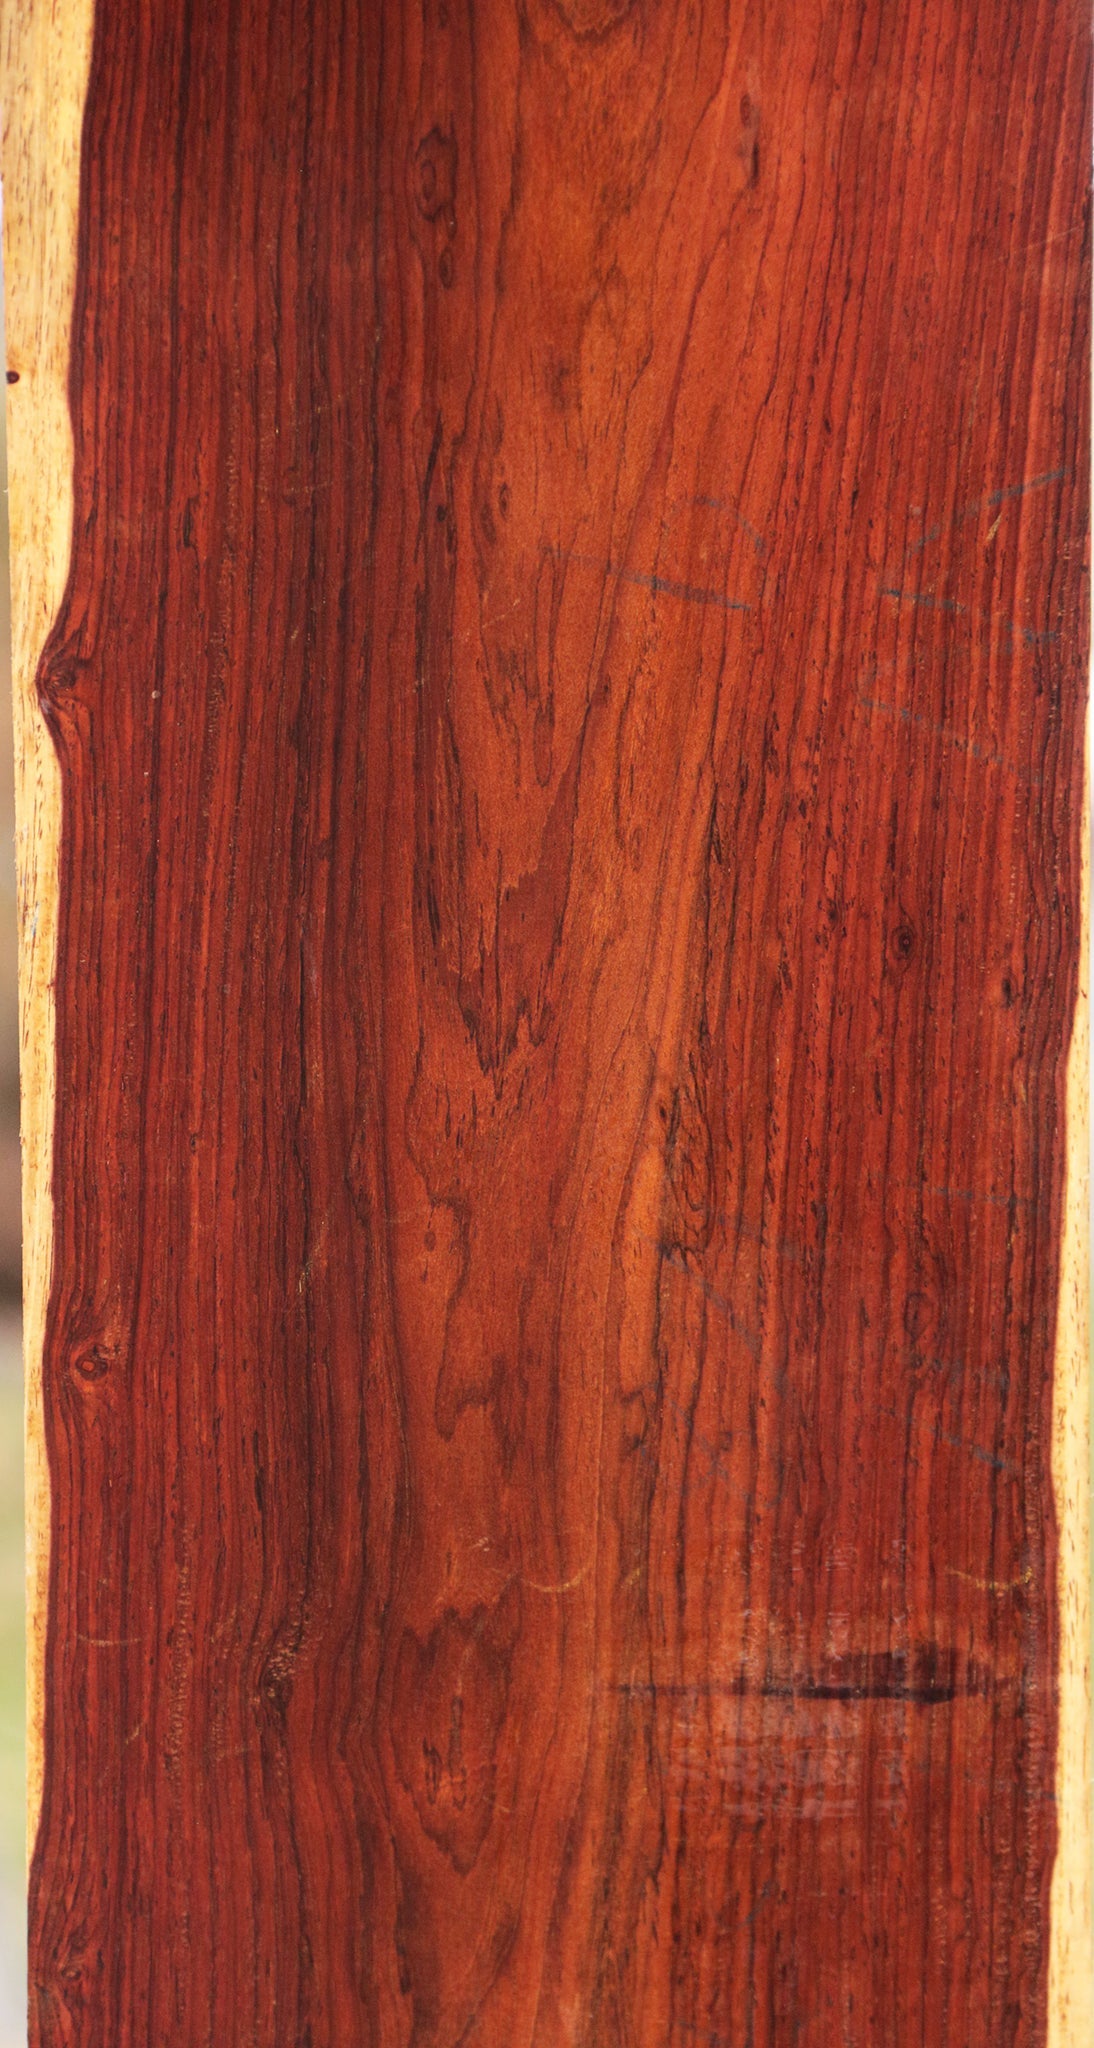 Cocobolo Lumber